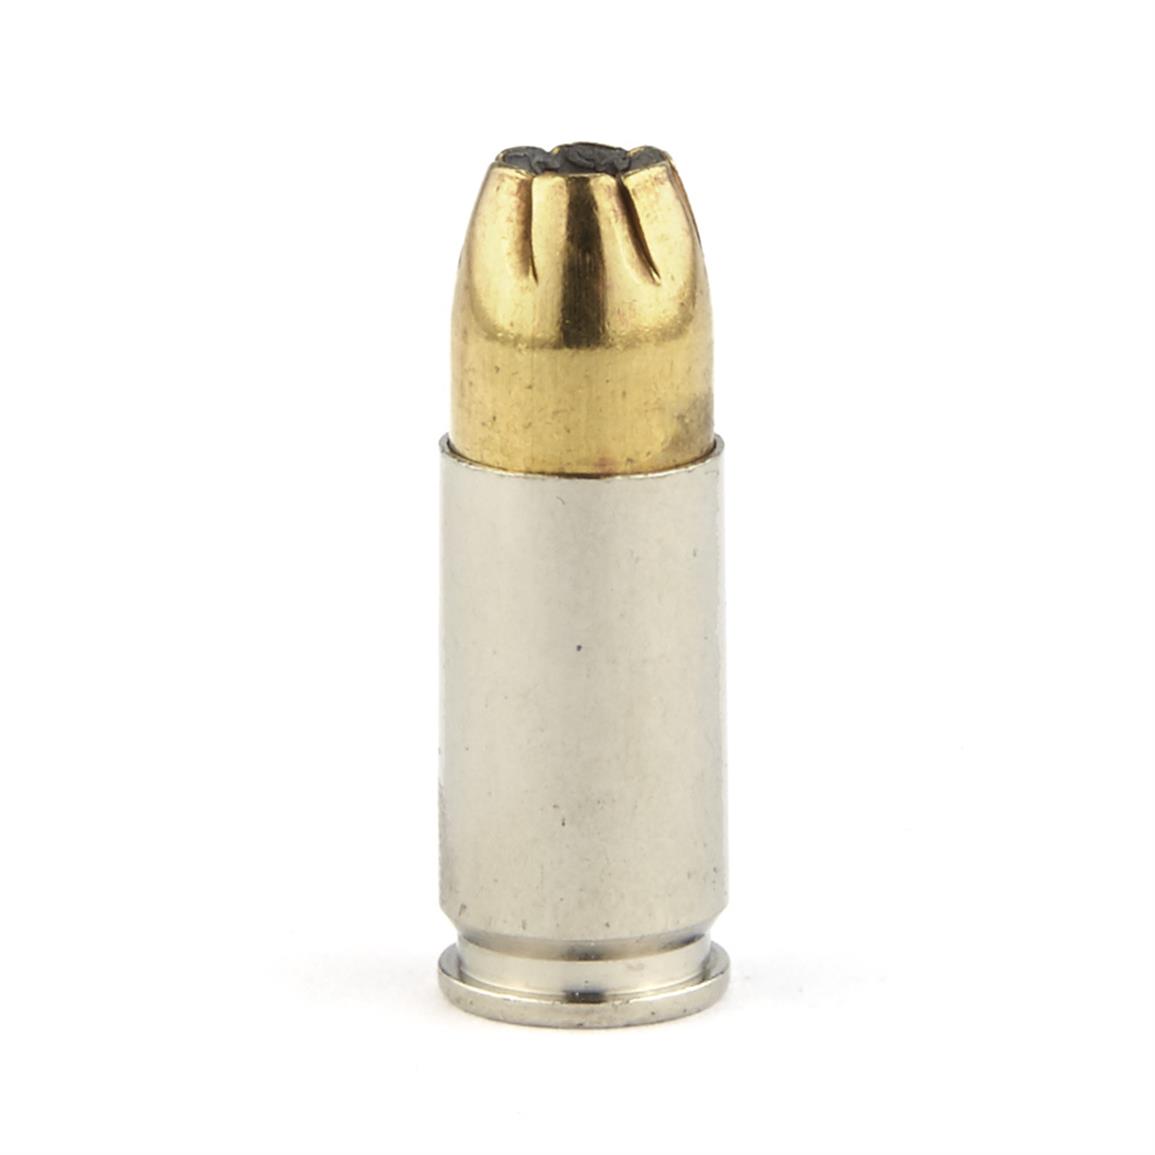 Remington Golden Saber Handgun 9mm 147 Grain Bjhp 25 Rounds 9412 9mm